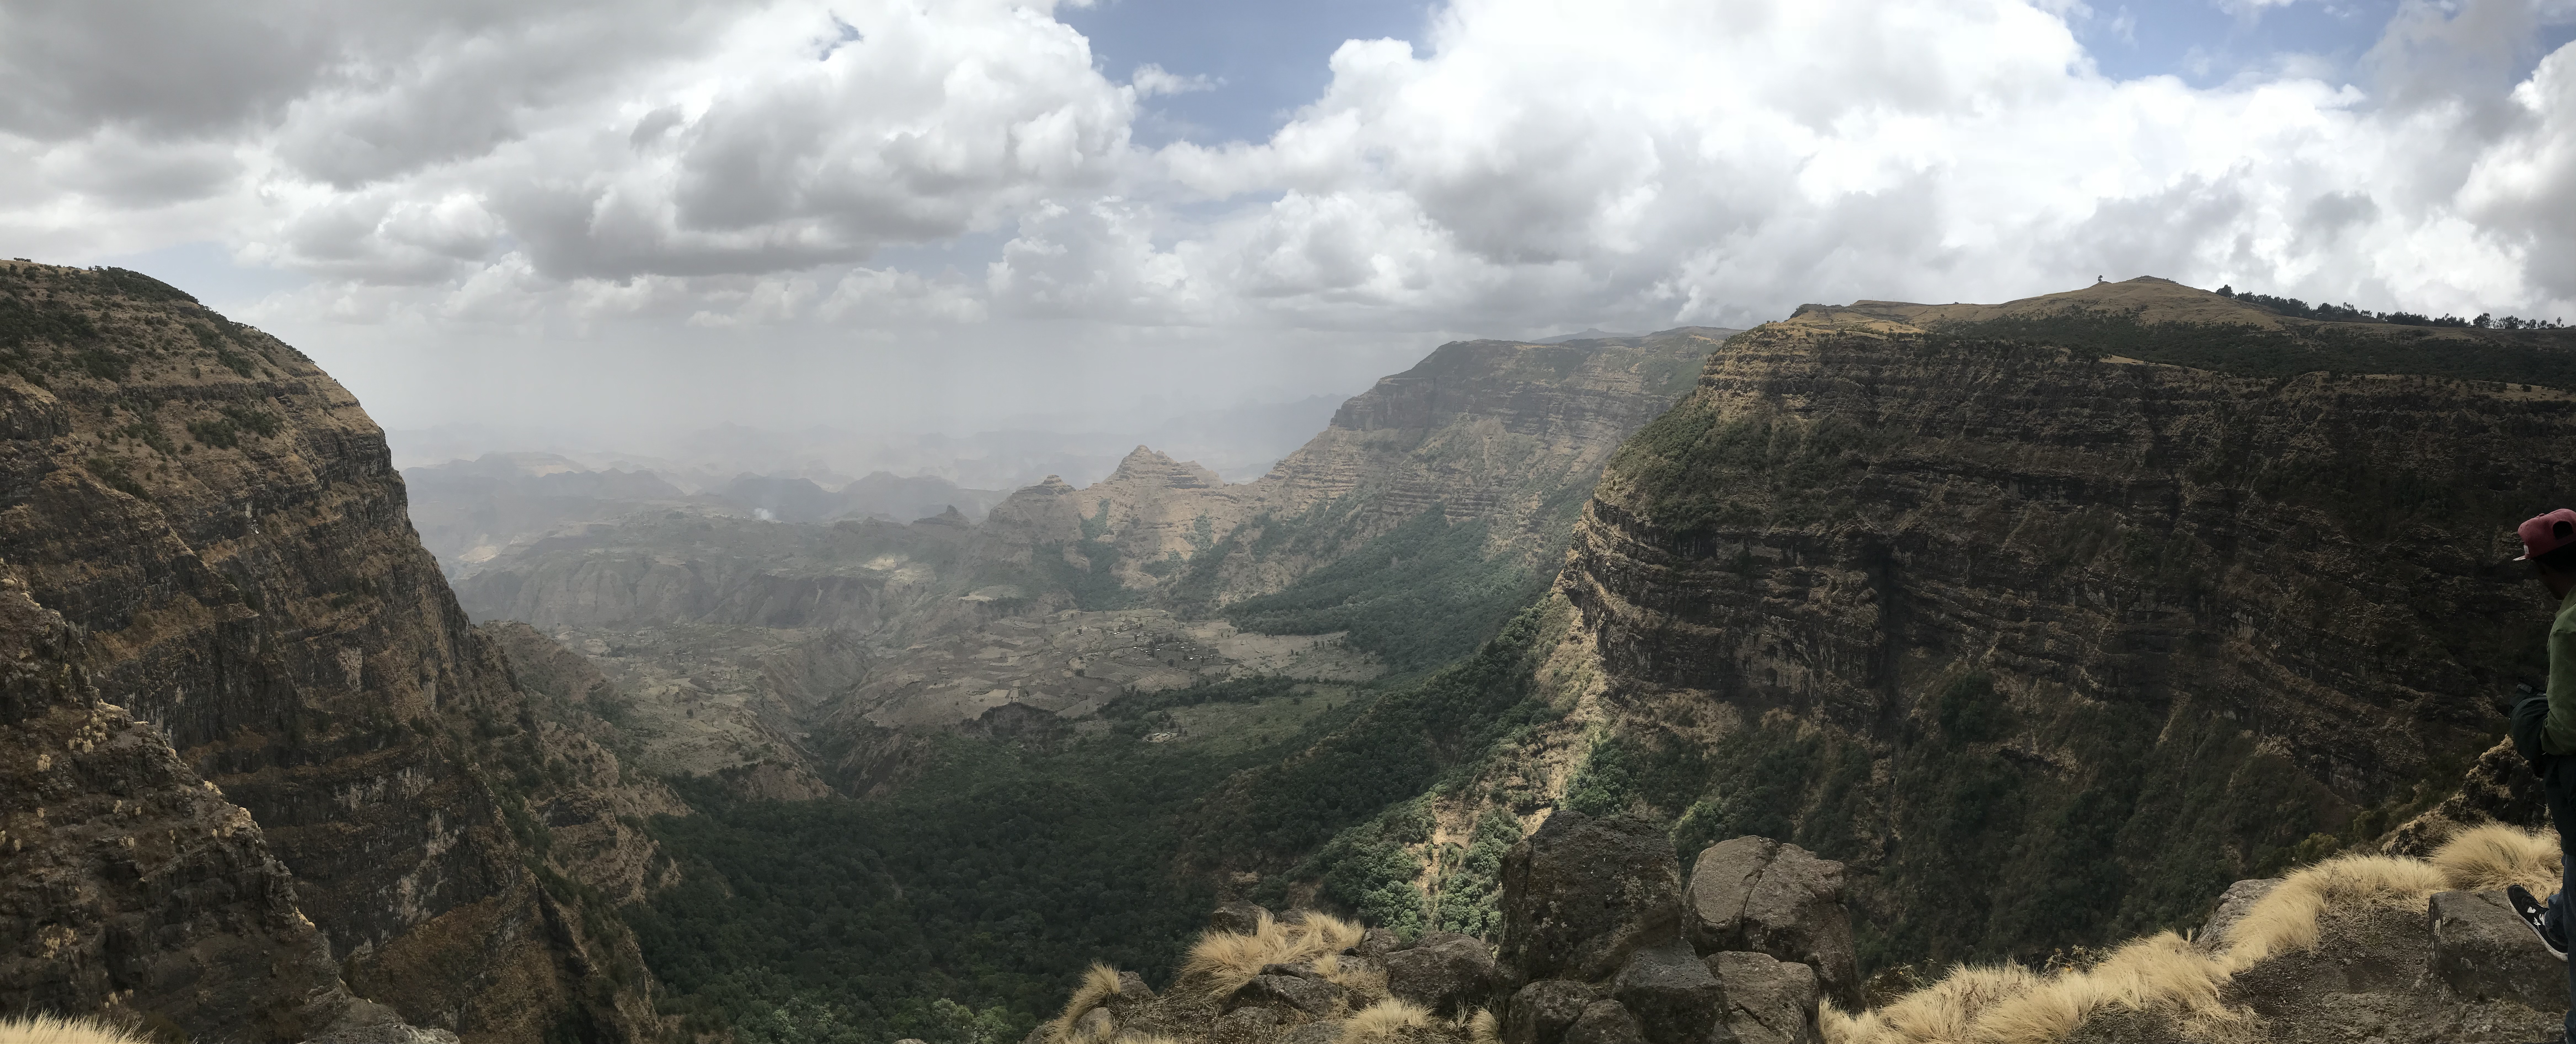 Ethiopia: The Semien Mountains